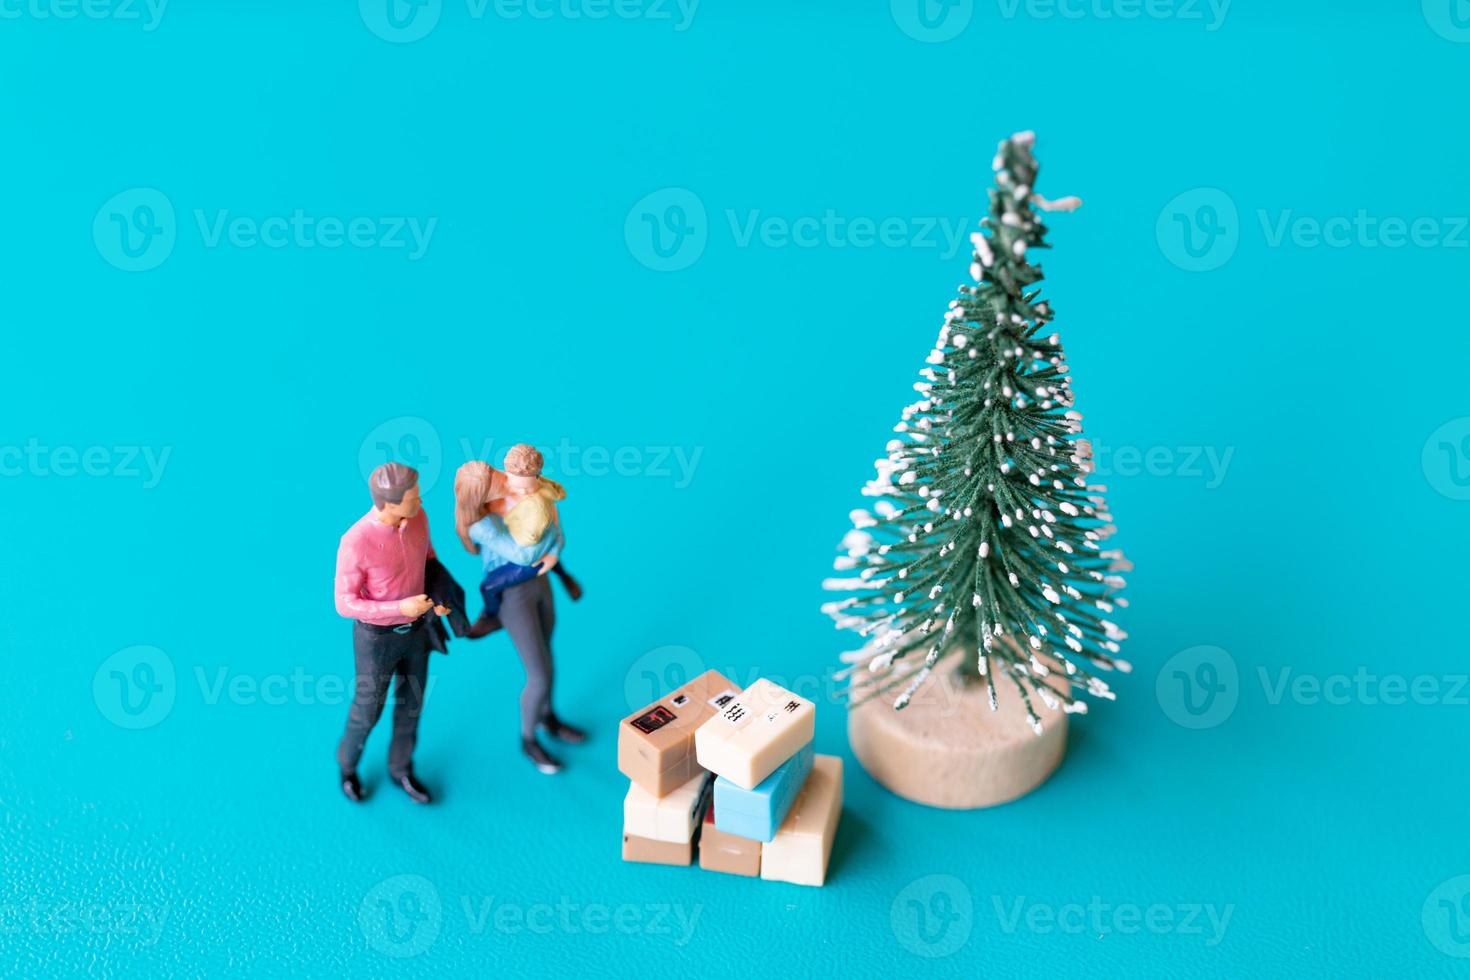 personnes miniatures, famille heureuse debout à côté d'un arbre de noël photo